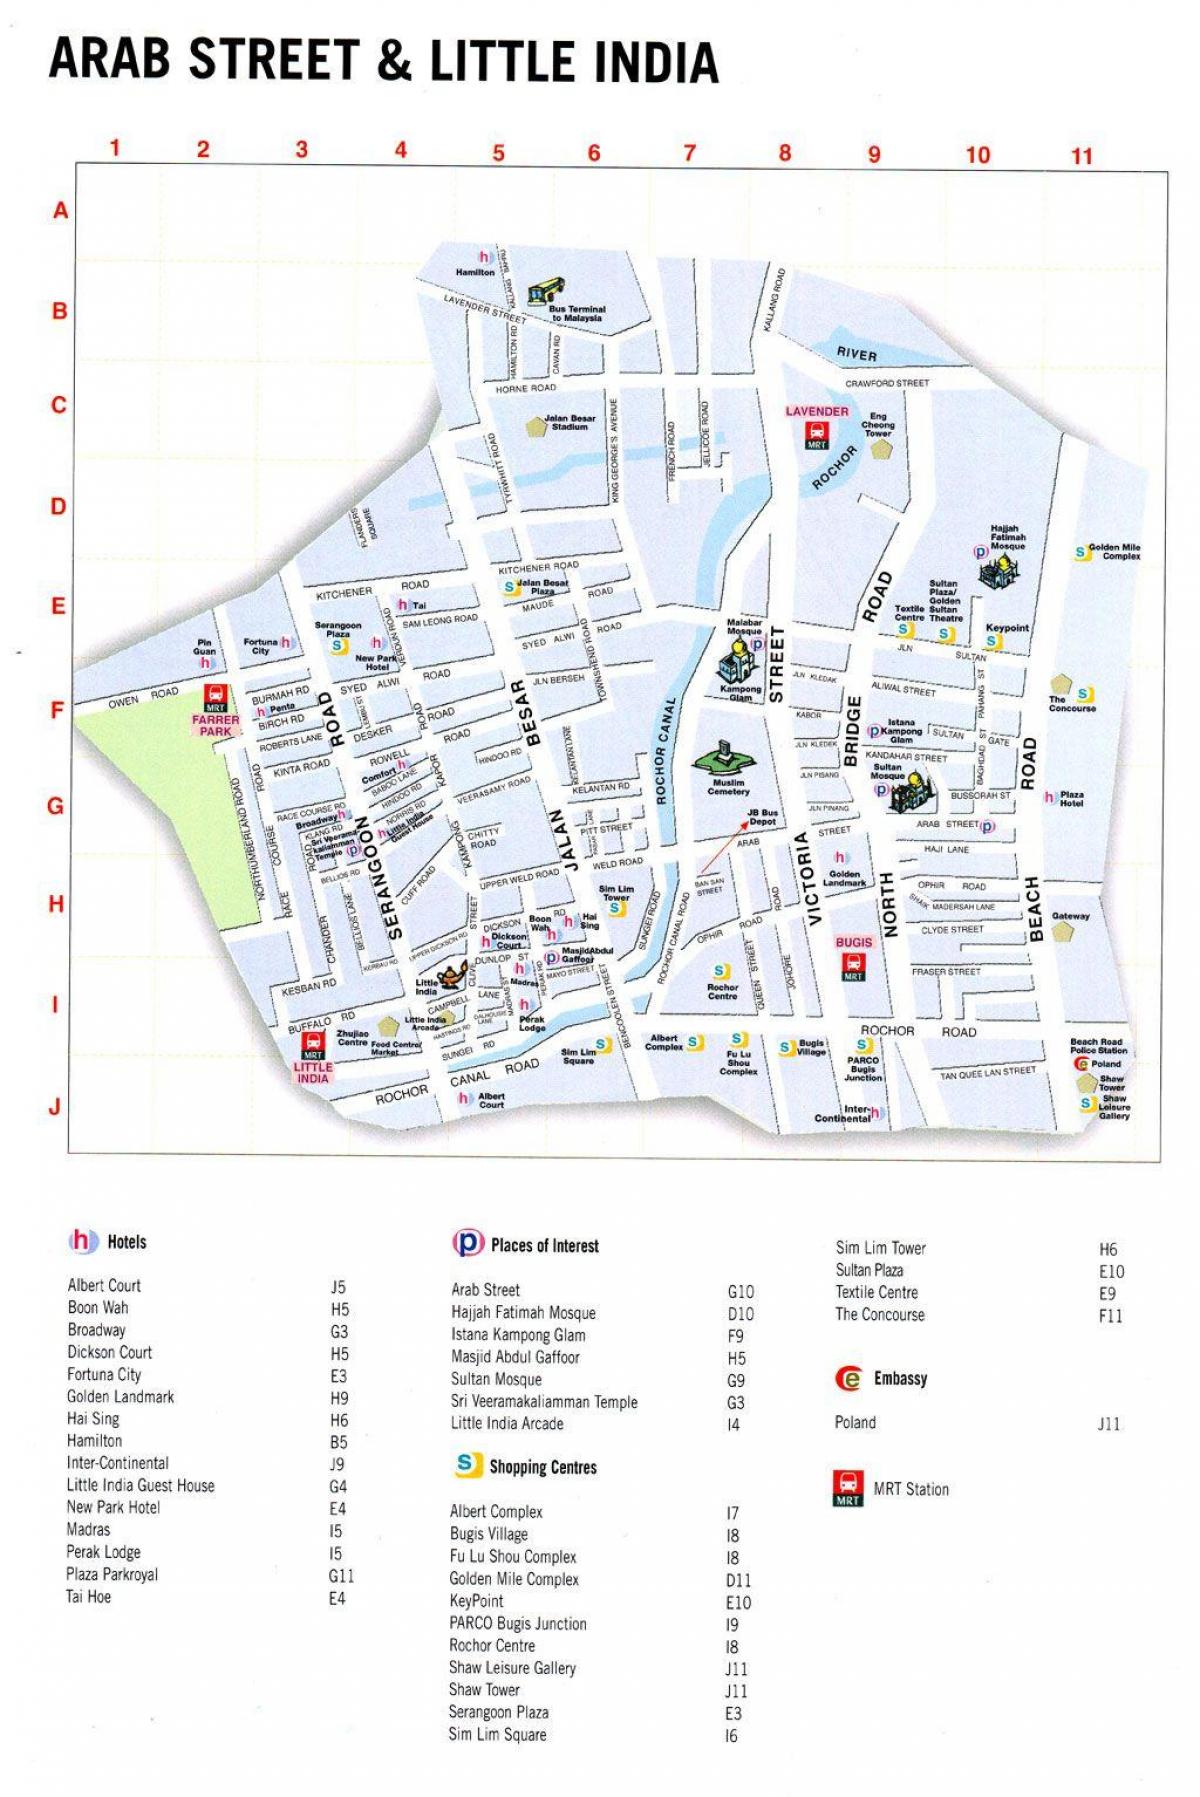 რუკა არაბი ქუჩის კუალა ლუმპურის